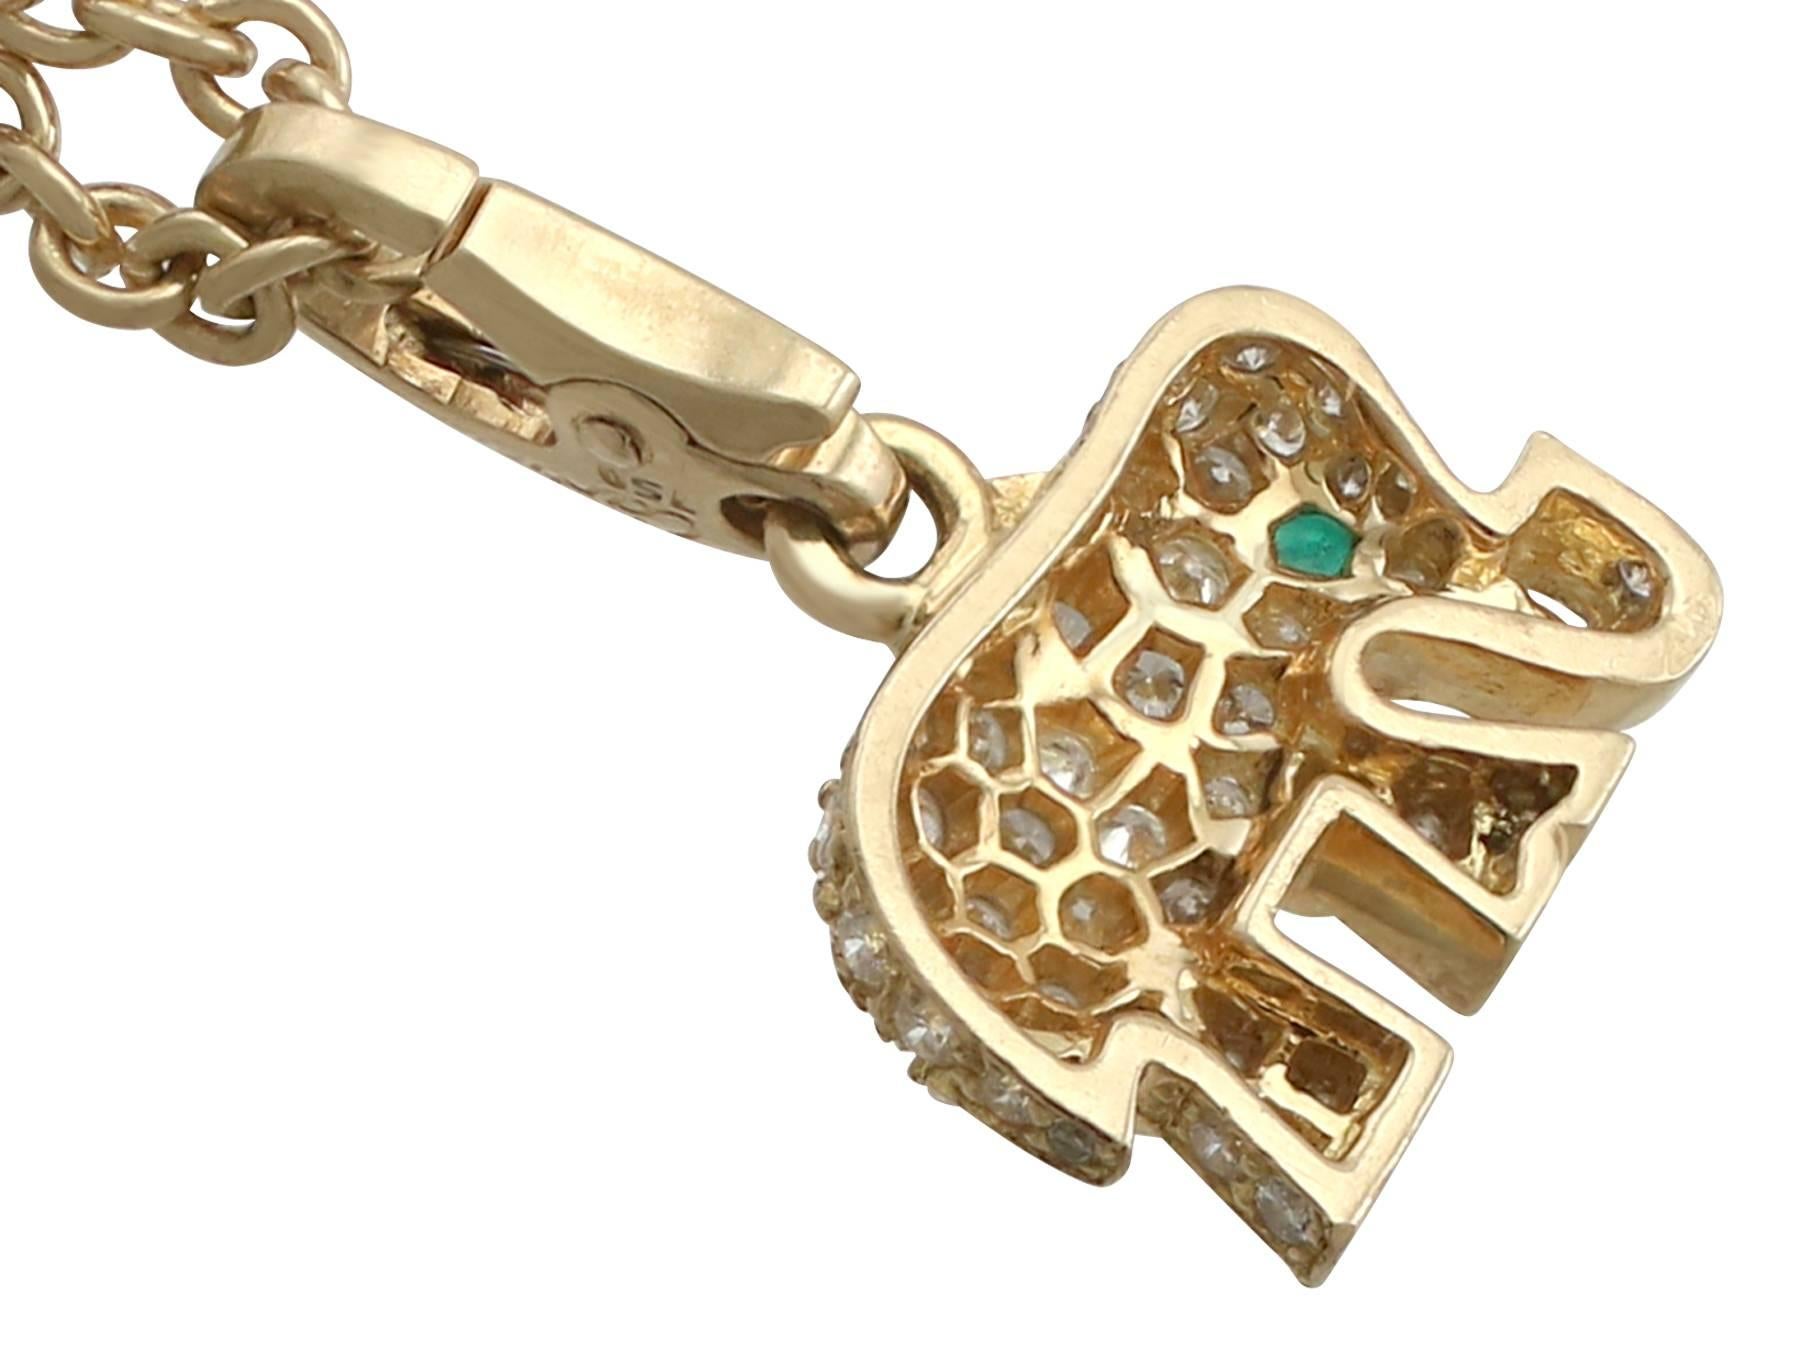 gold elephant pendant with diamonds